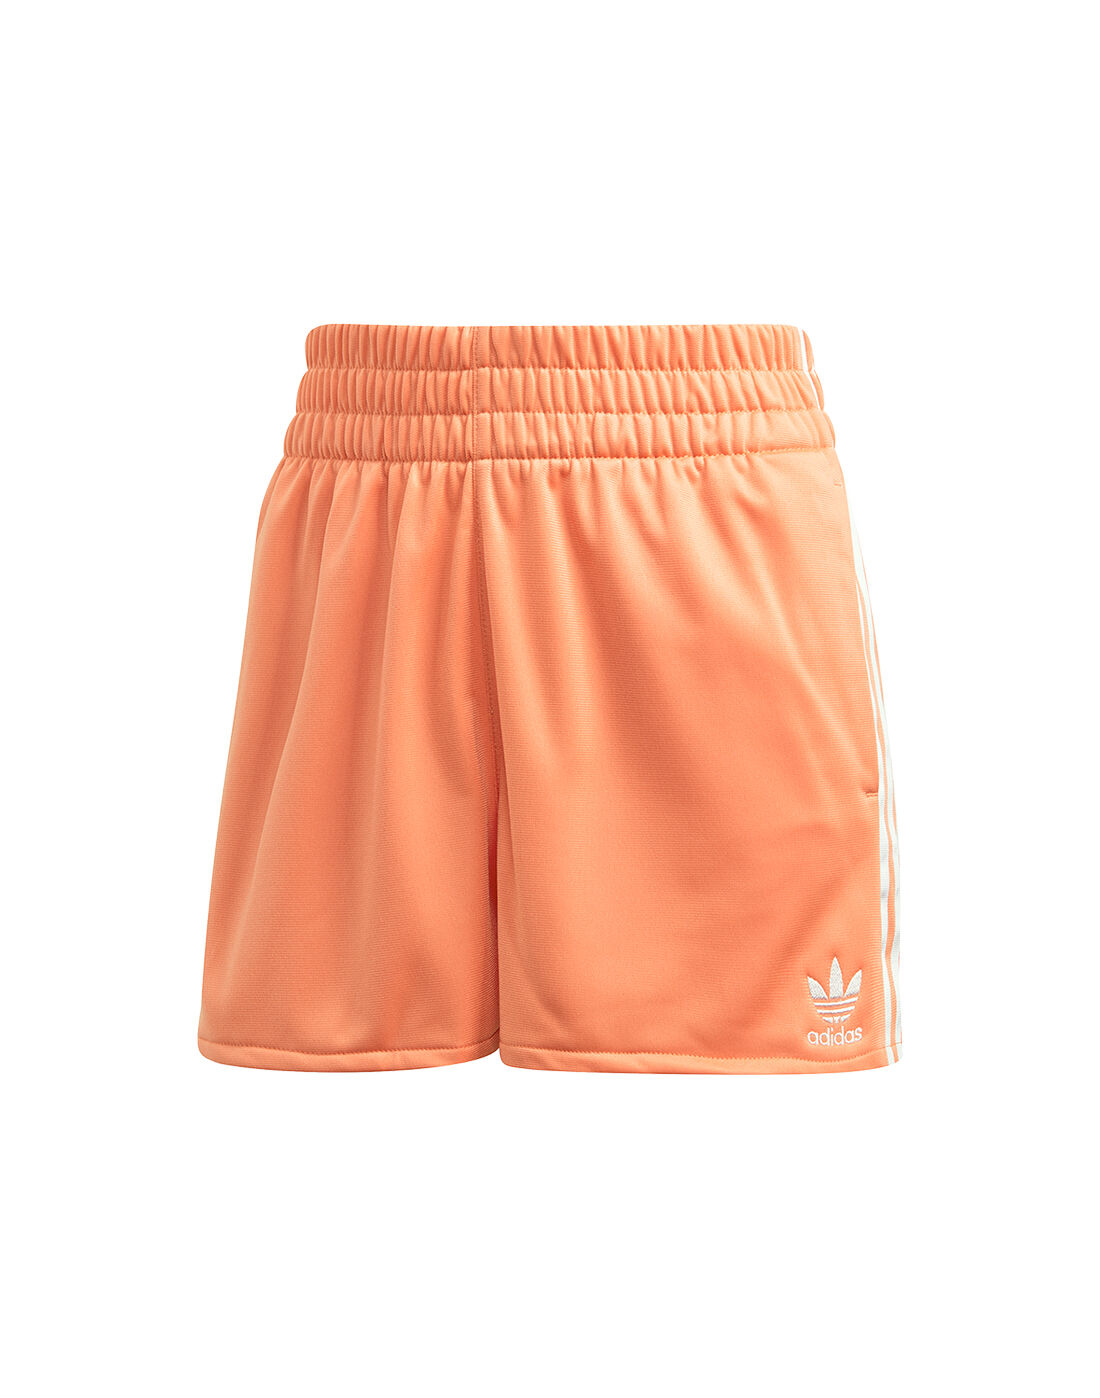 adidas originals orange shorts